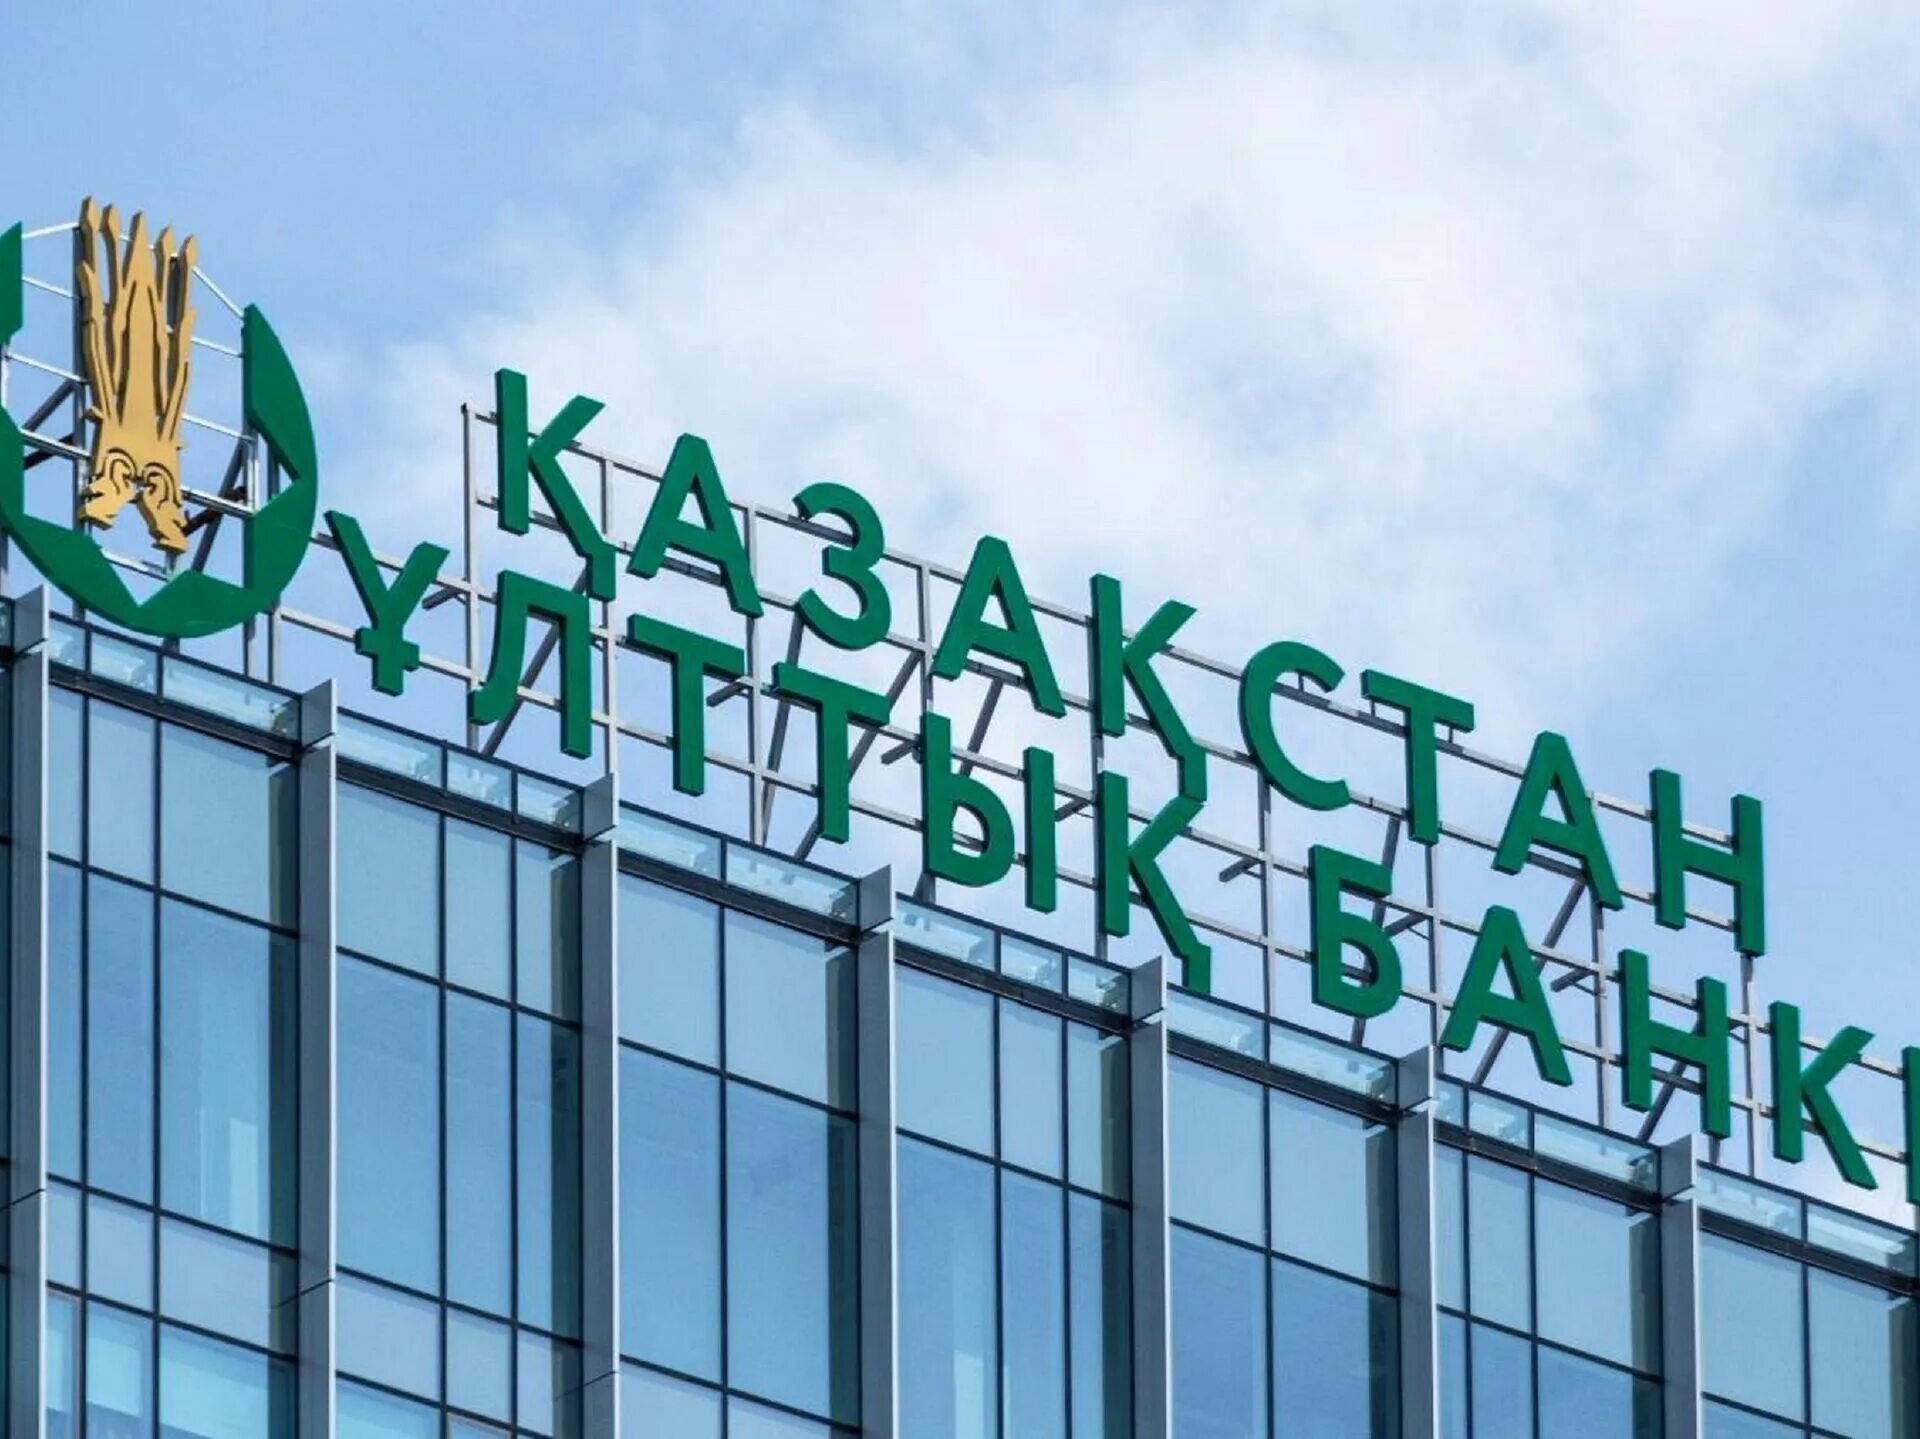 Национальный банк Республики Казахстан. Национальный банк Казахстана лого. Центральный банк Казахстана. Сайт национального банка Казахстана.